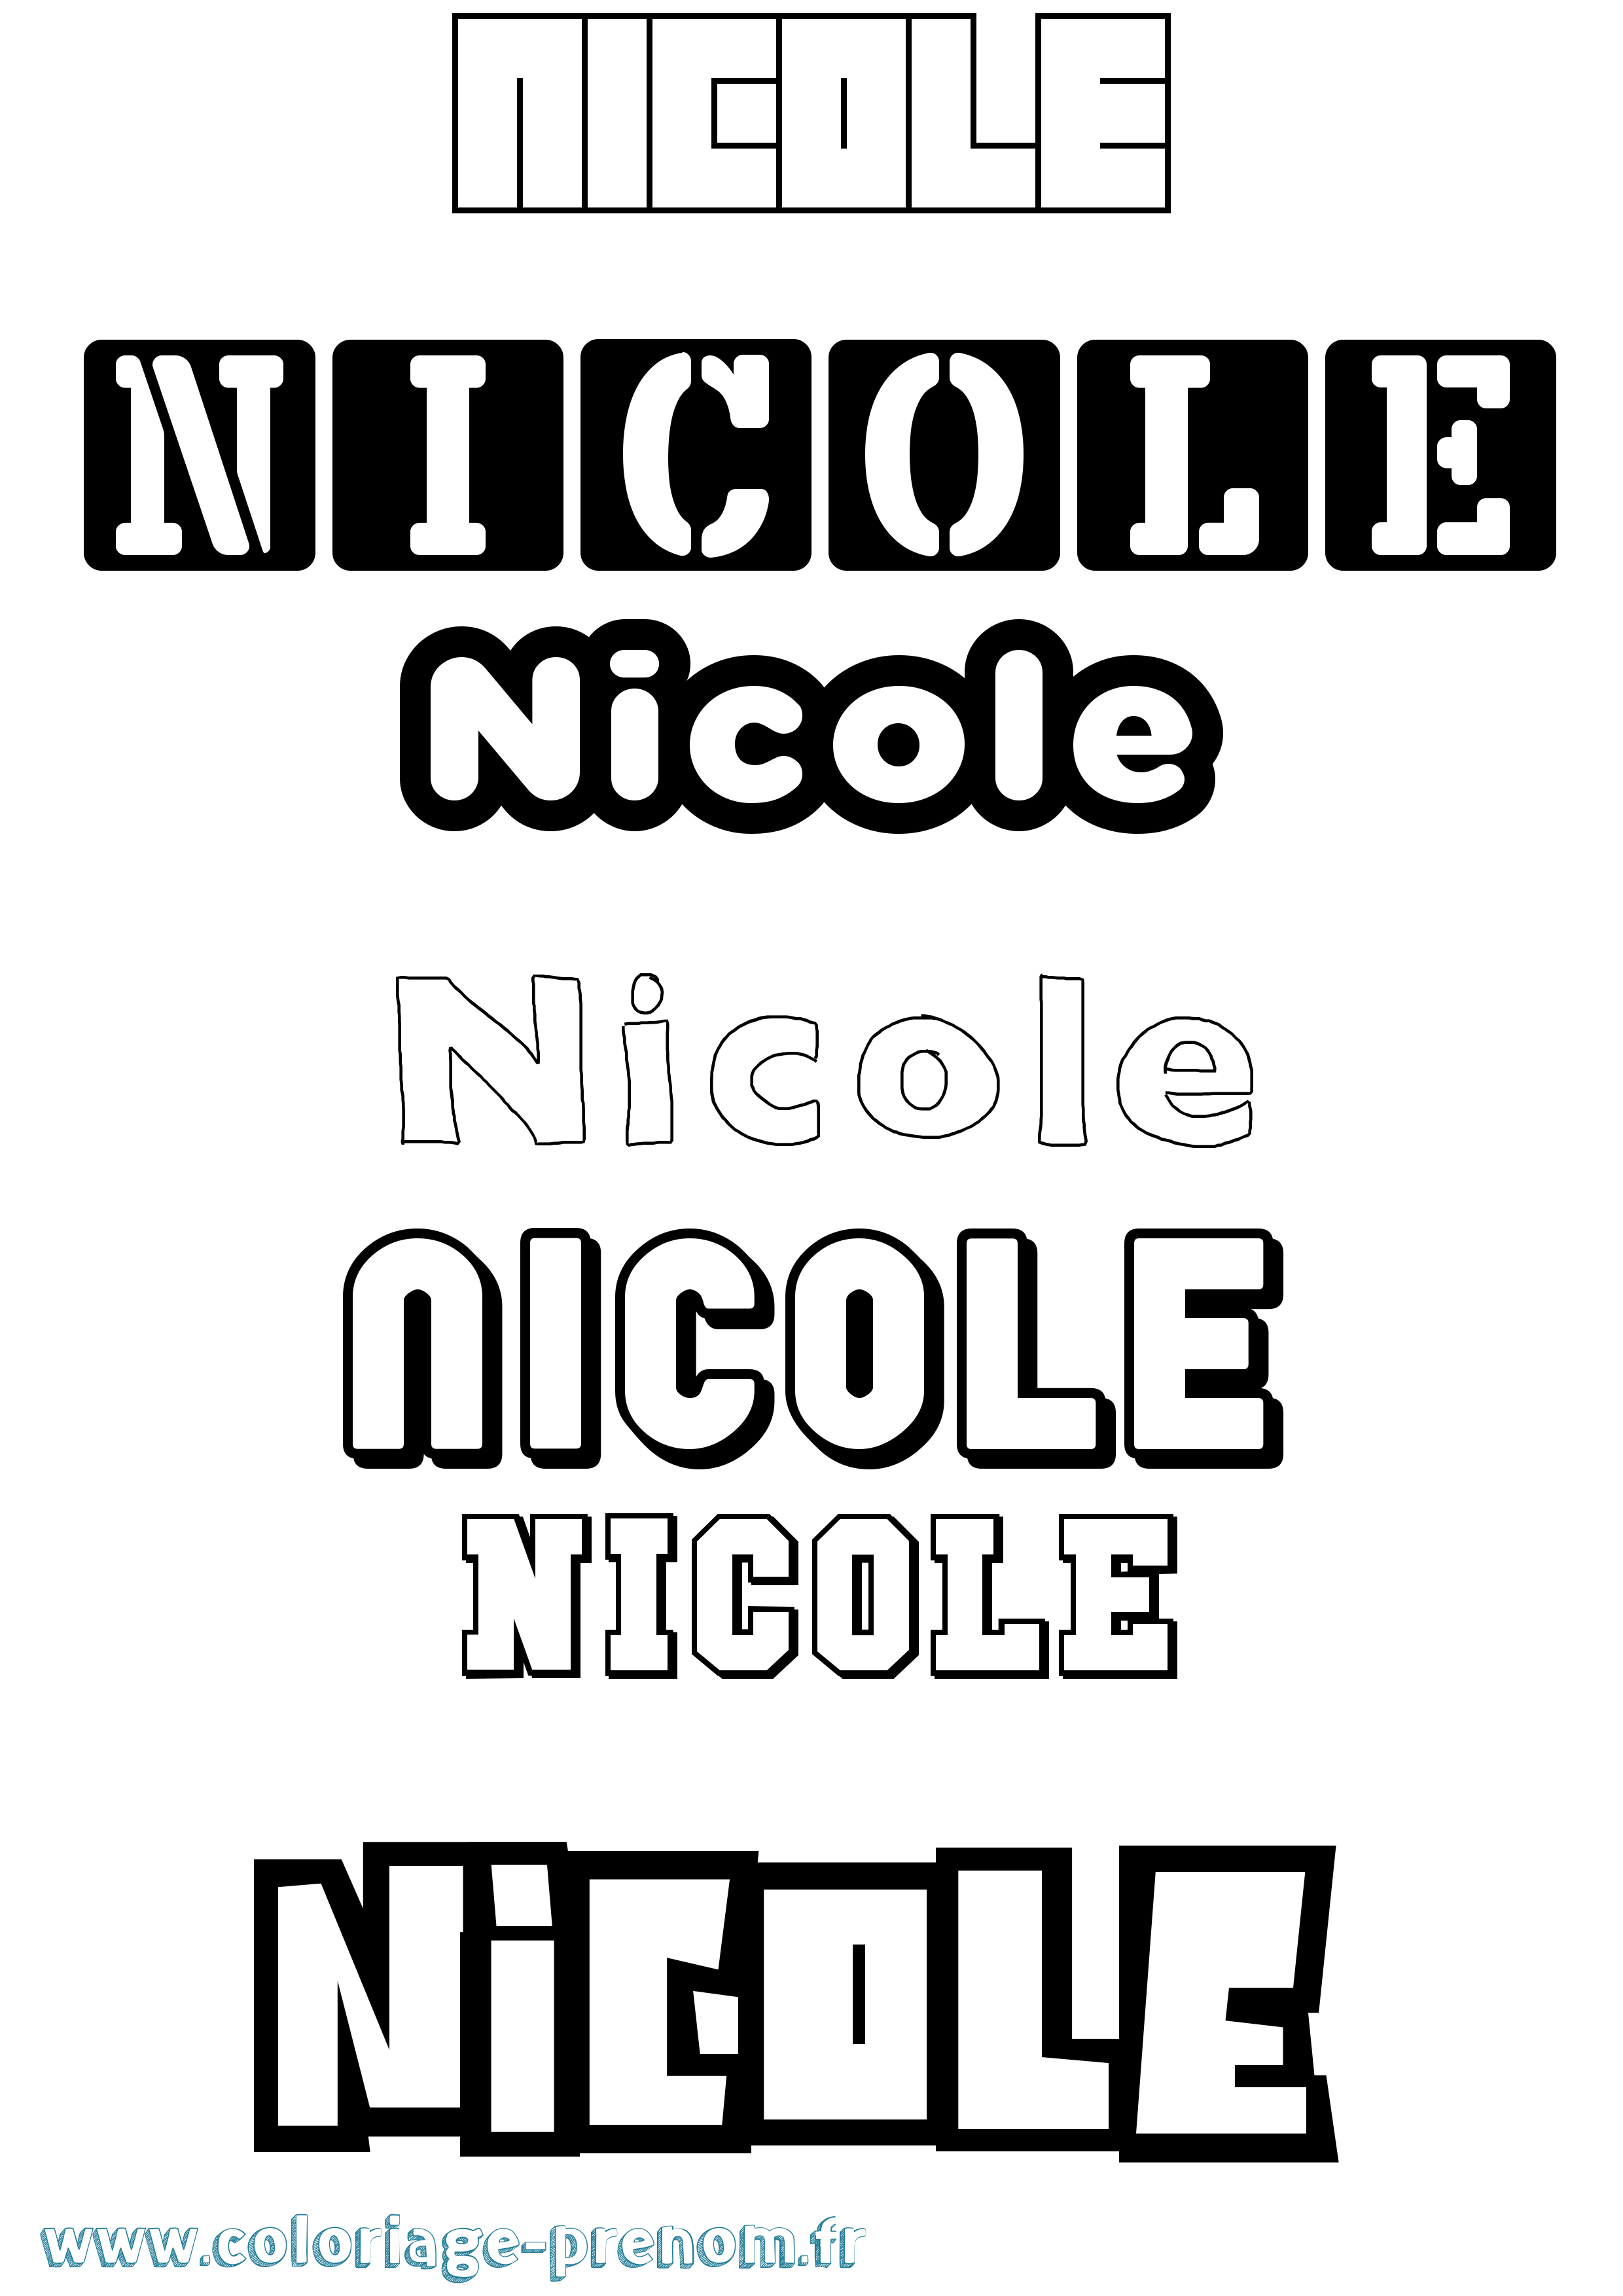 Coloriage prénom Nicole